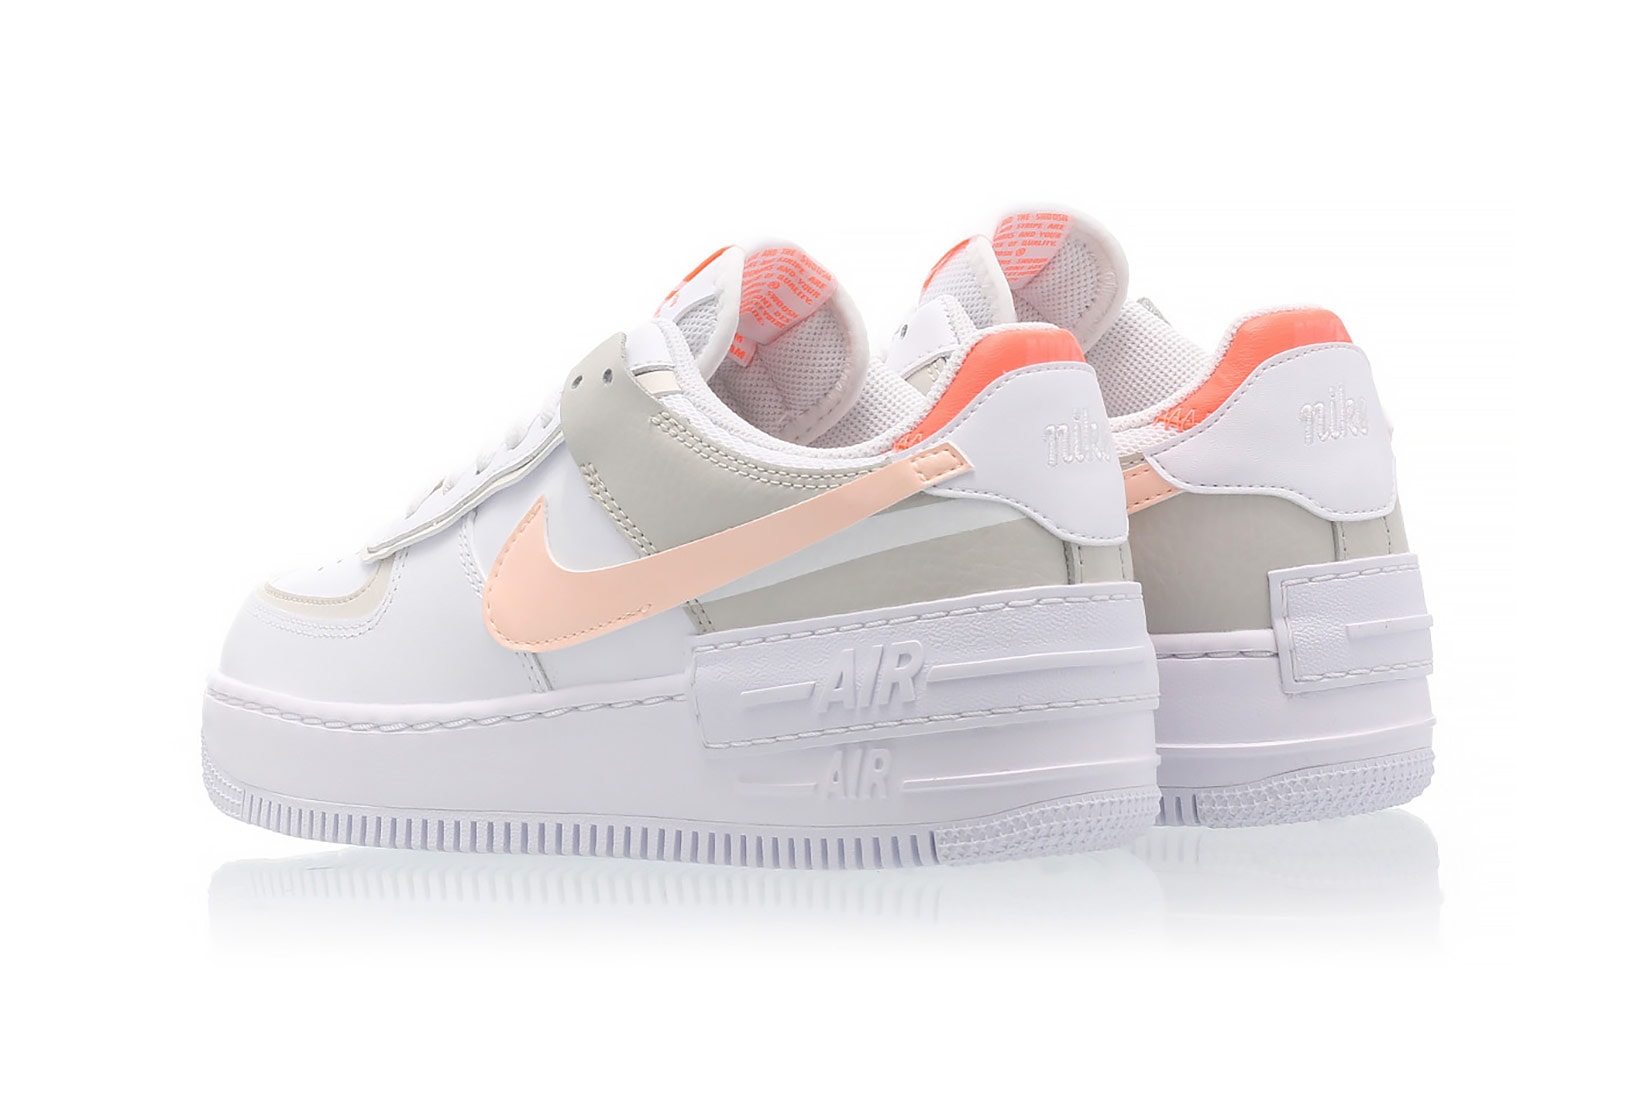 nike air force 1 shadow womens sneakers bright mango white pastel pink orange ivory colorway footwear sneakerhead shoes heel